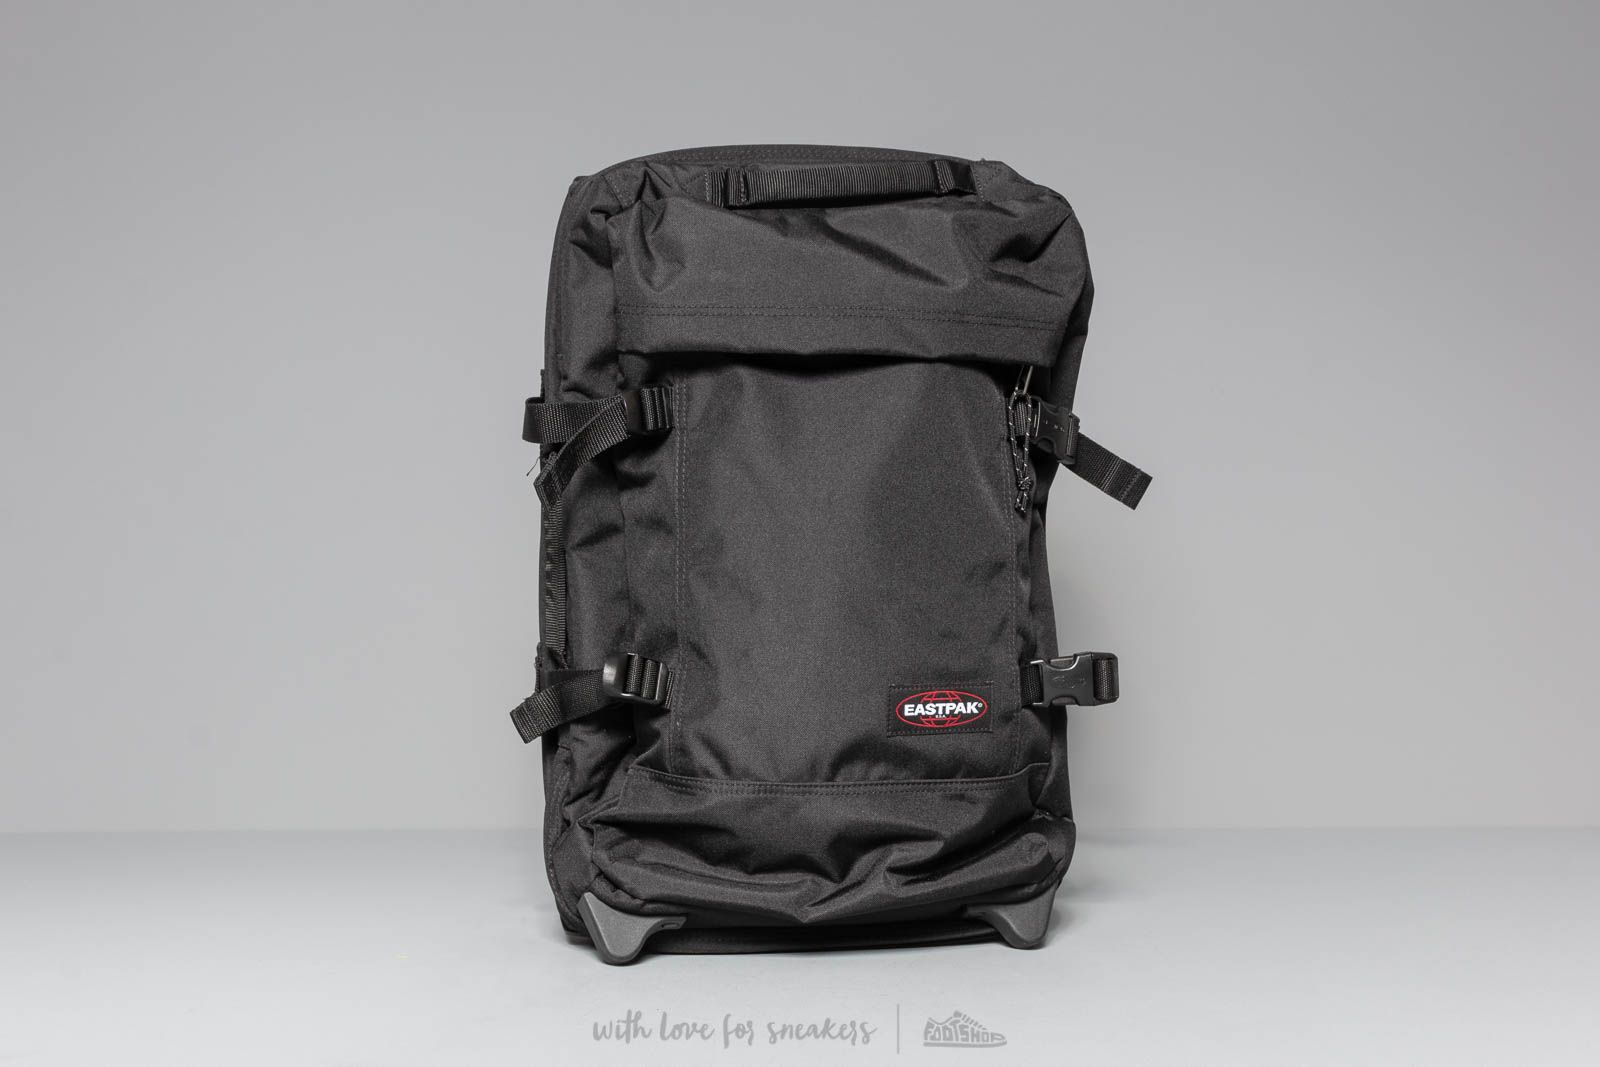 Bags & backpacks Eastpak Strapverz Travel Luggage Black